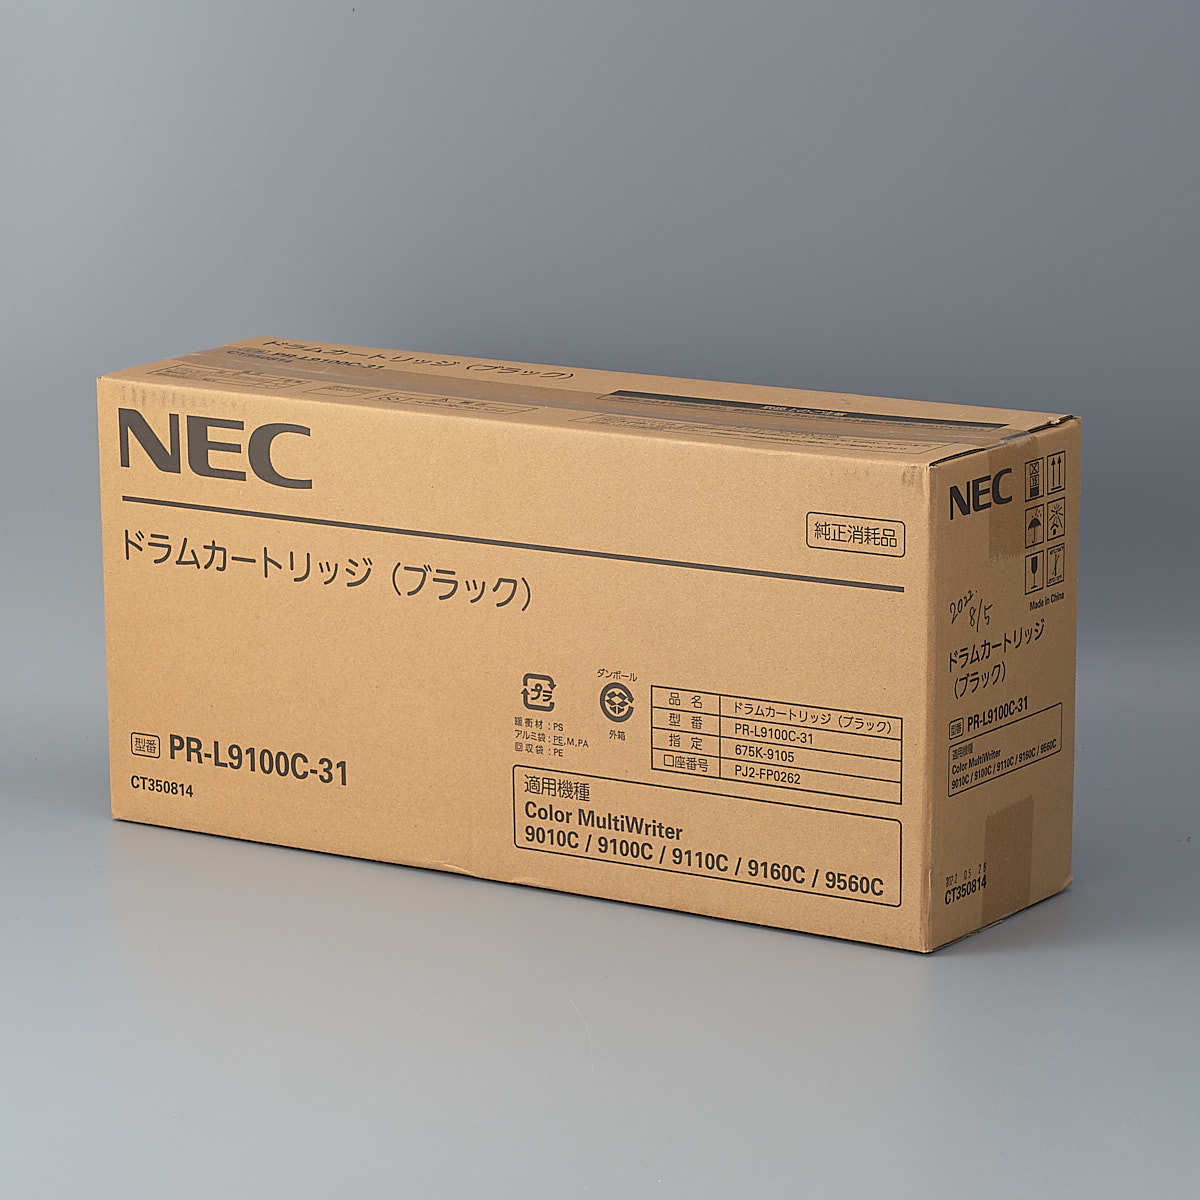 送料無料!! NEC PR-L9100C-31 ドラムカートリッジ ブラック 純正 適合機種 Color MultiWriter 9010C/9100C/9110C/9160C/9560C_画像1